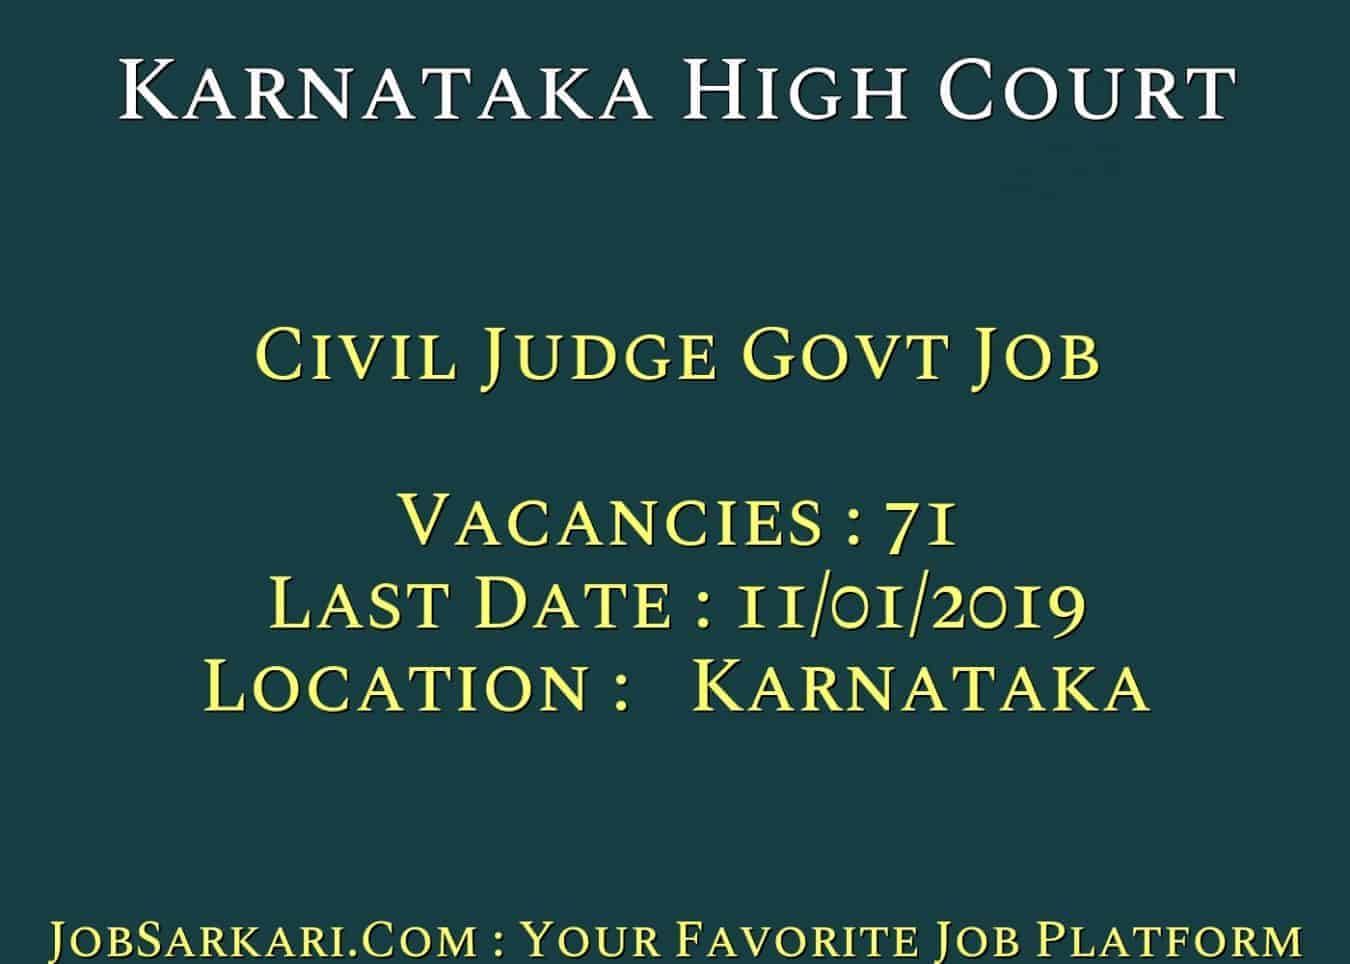 Karnataka High Court Recruitment 2018 For Civil Judge Govt Job